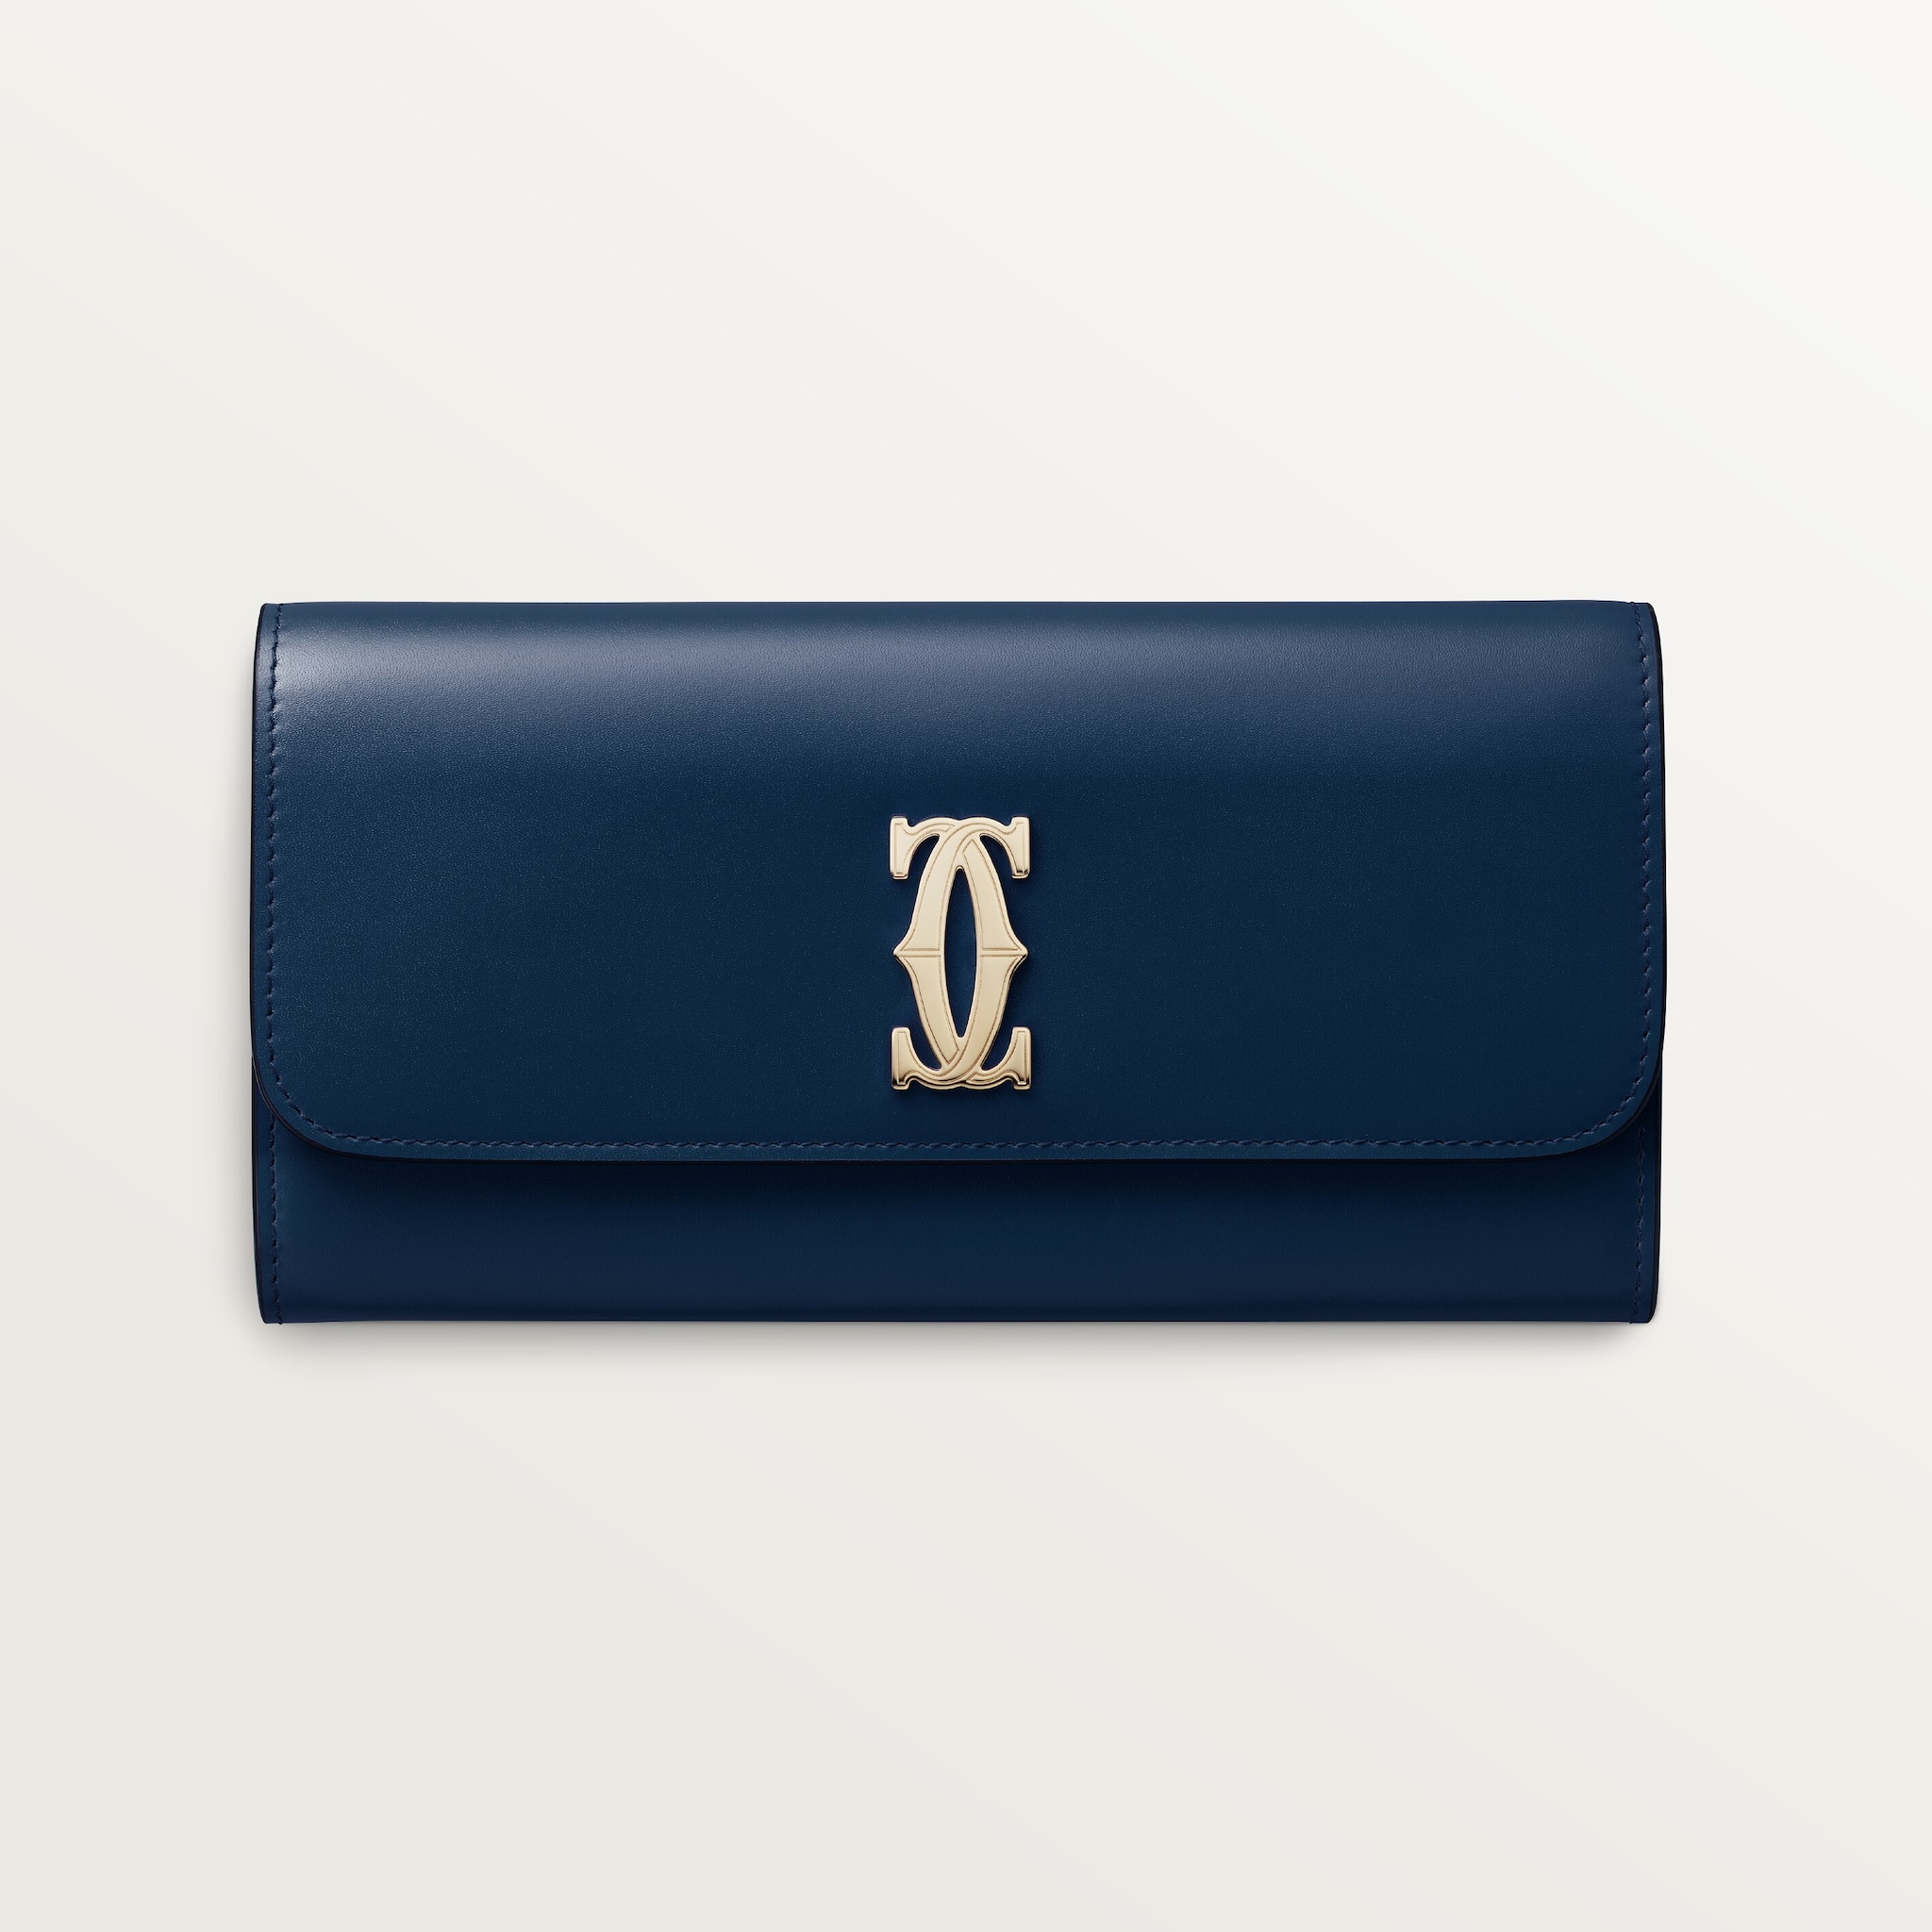 International wallet with flap, C de CartierMidnight blue calfskin, golden finish